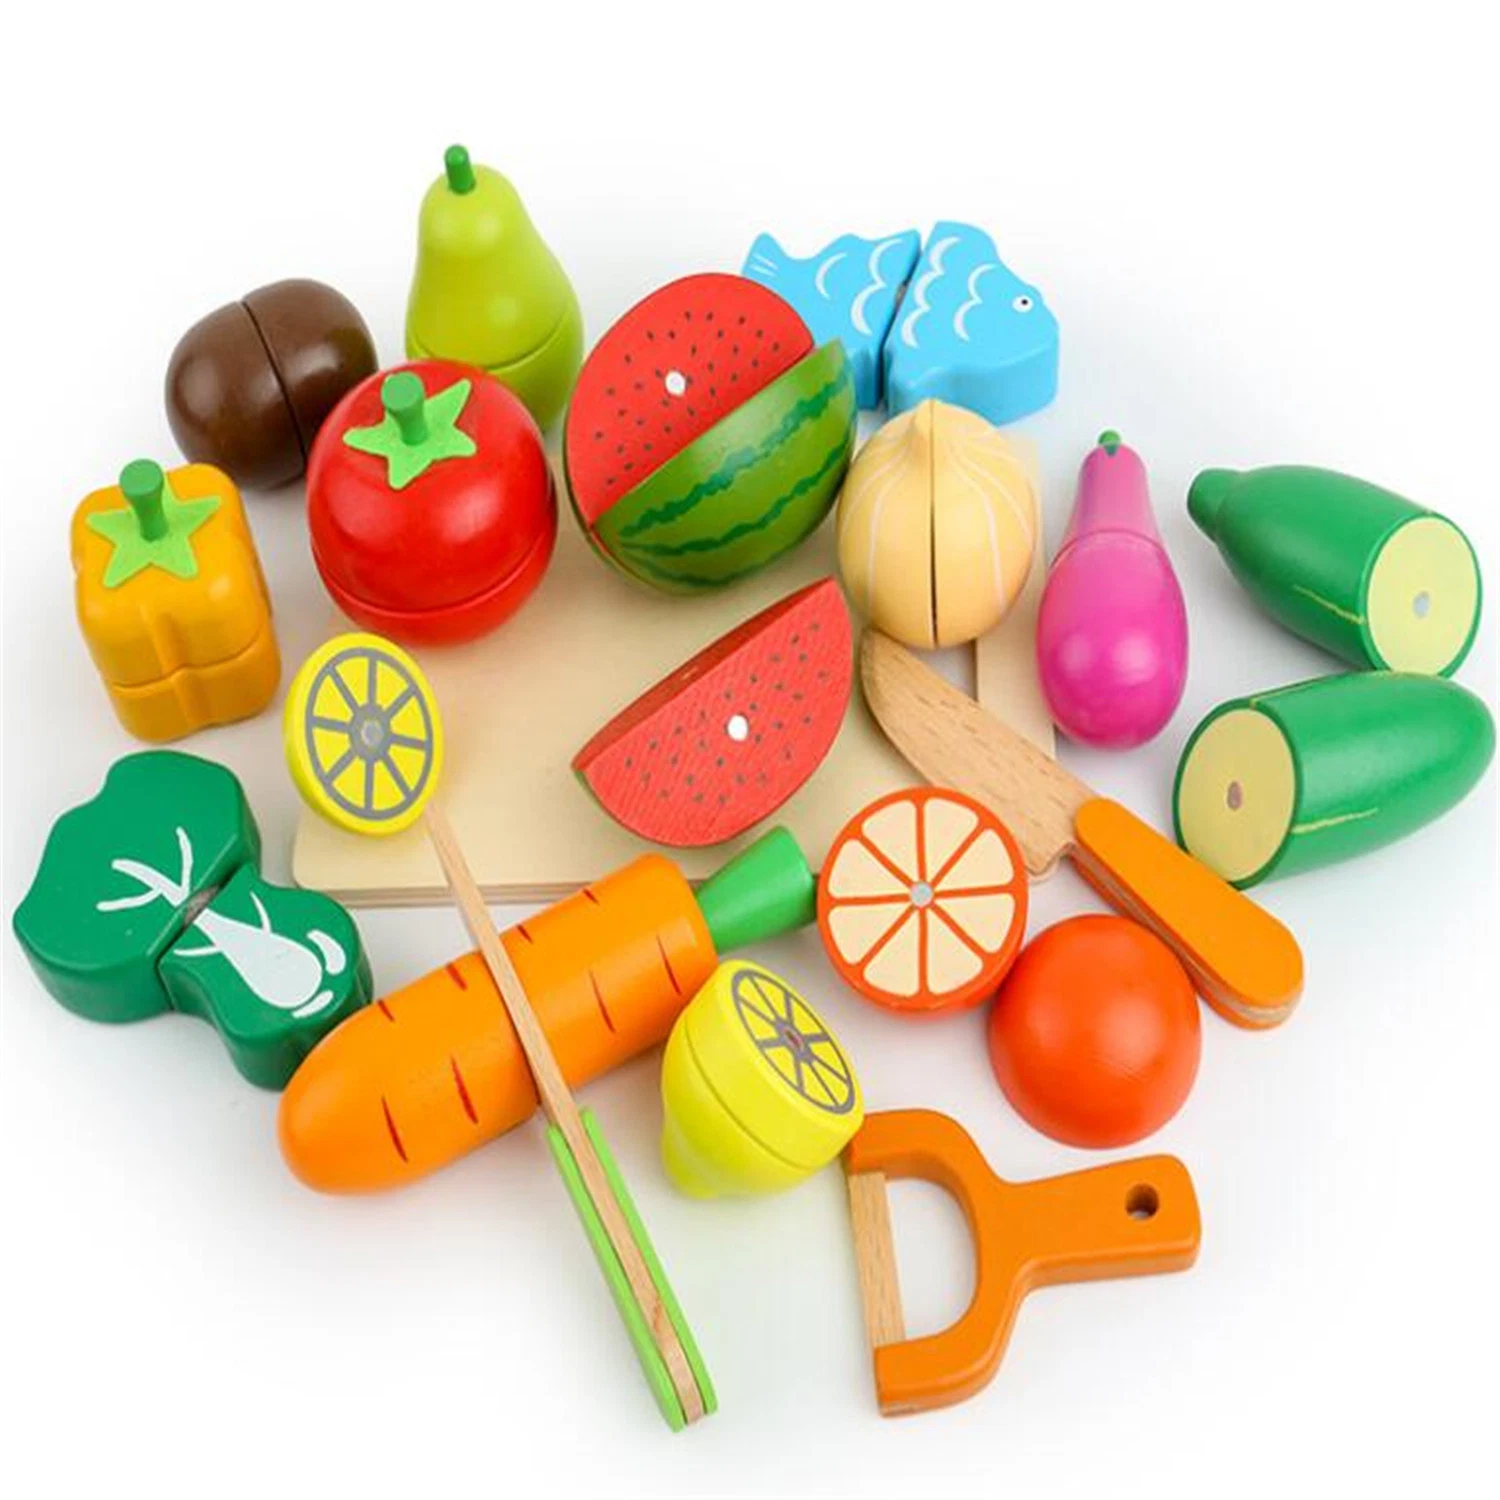 Kinder pädagogische DIY Spielzeug Holzschnitt Spielzeug